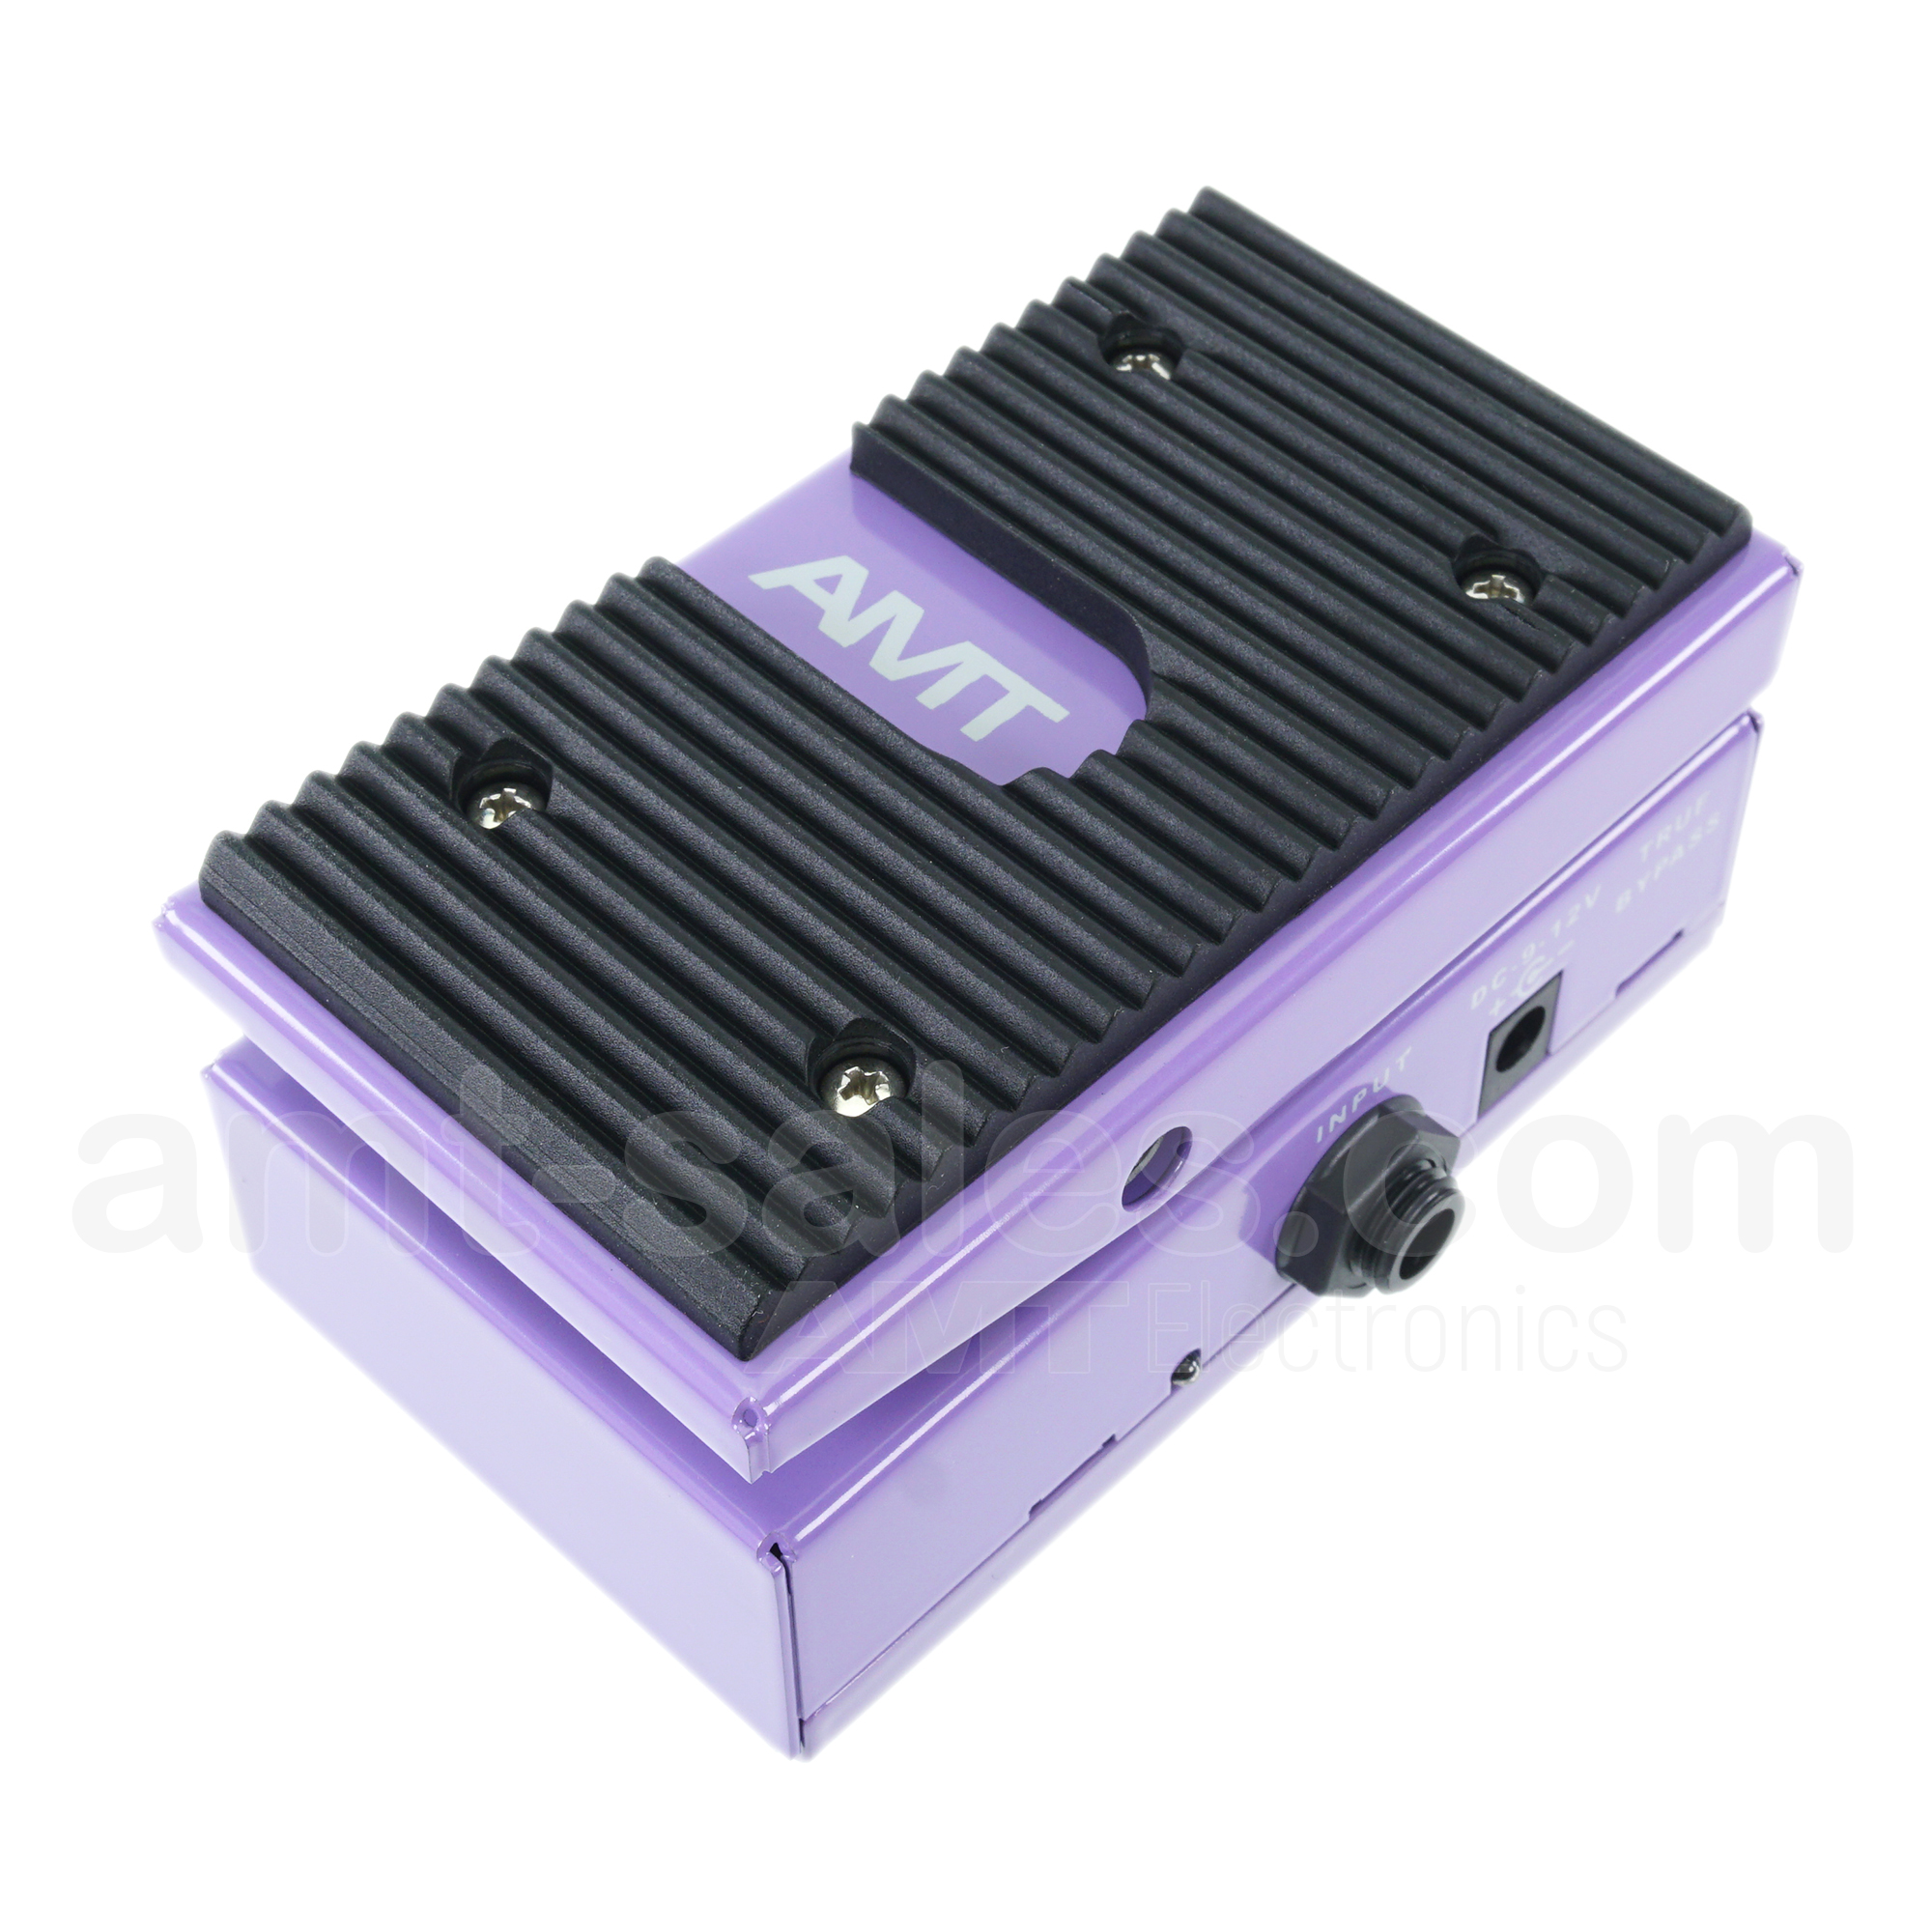 AMT WH-1 - wah-wah for guitar - Optical WAH-WAH pedal for guitar